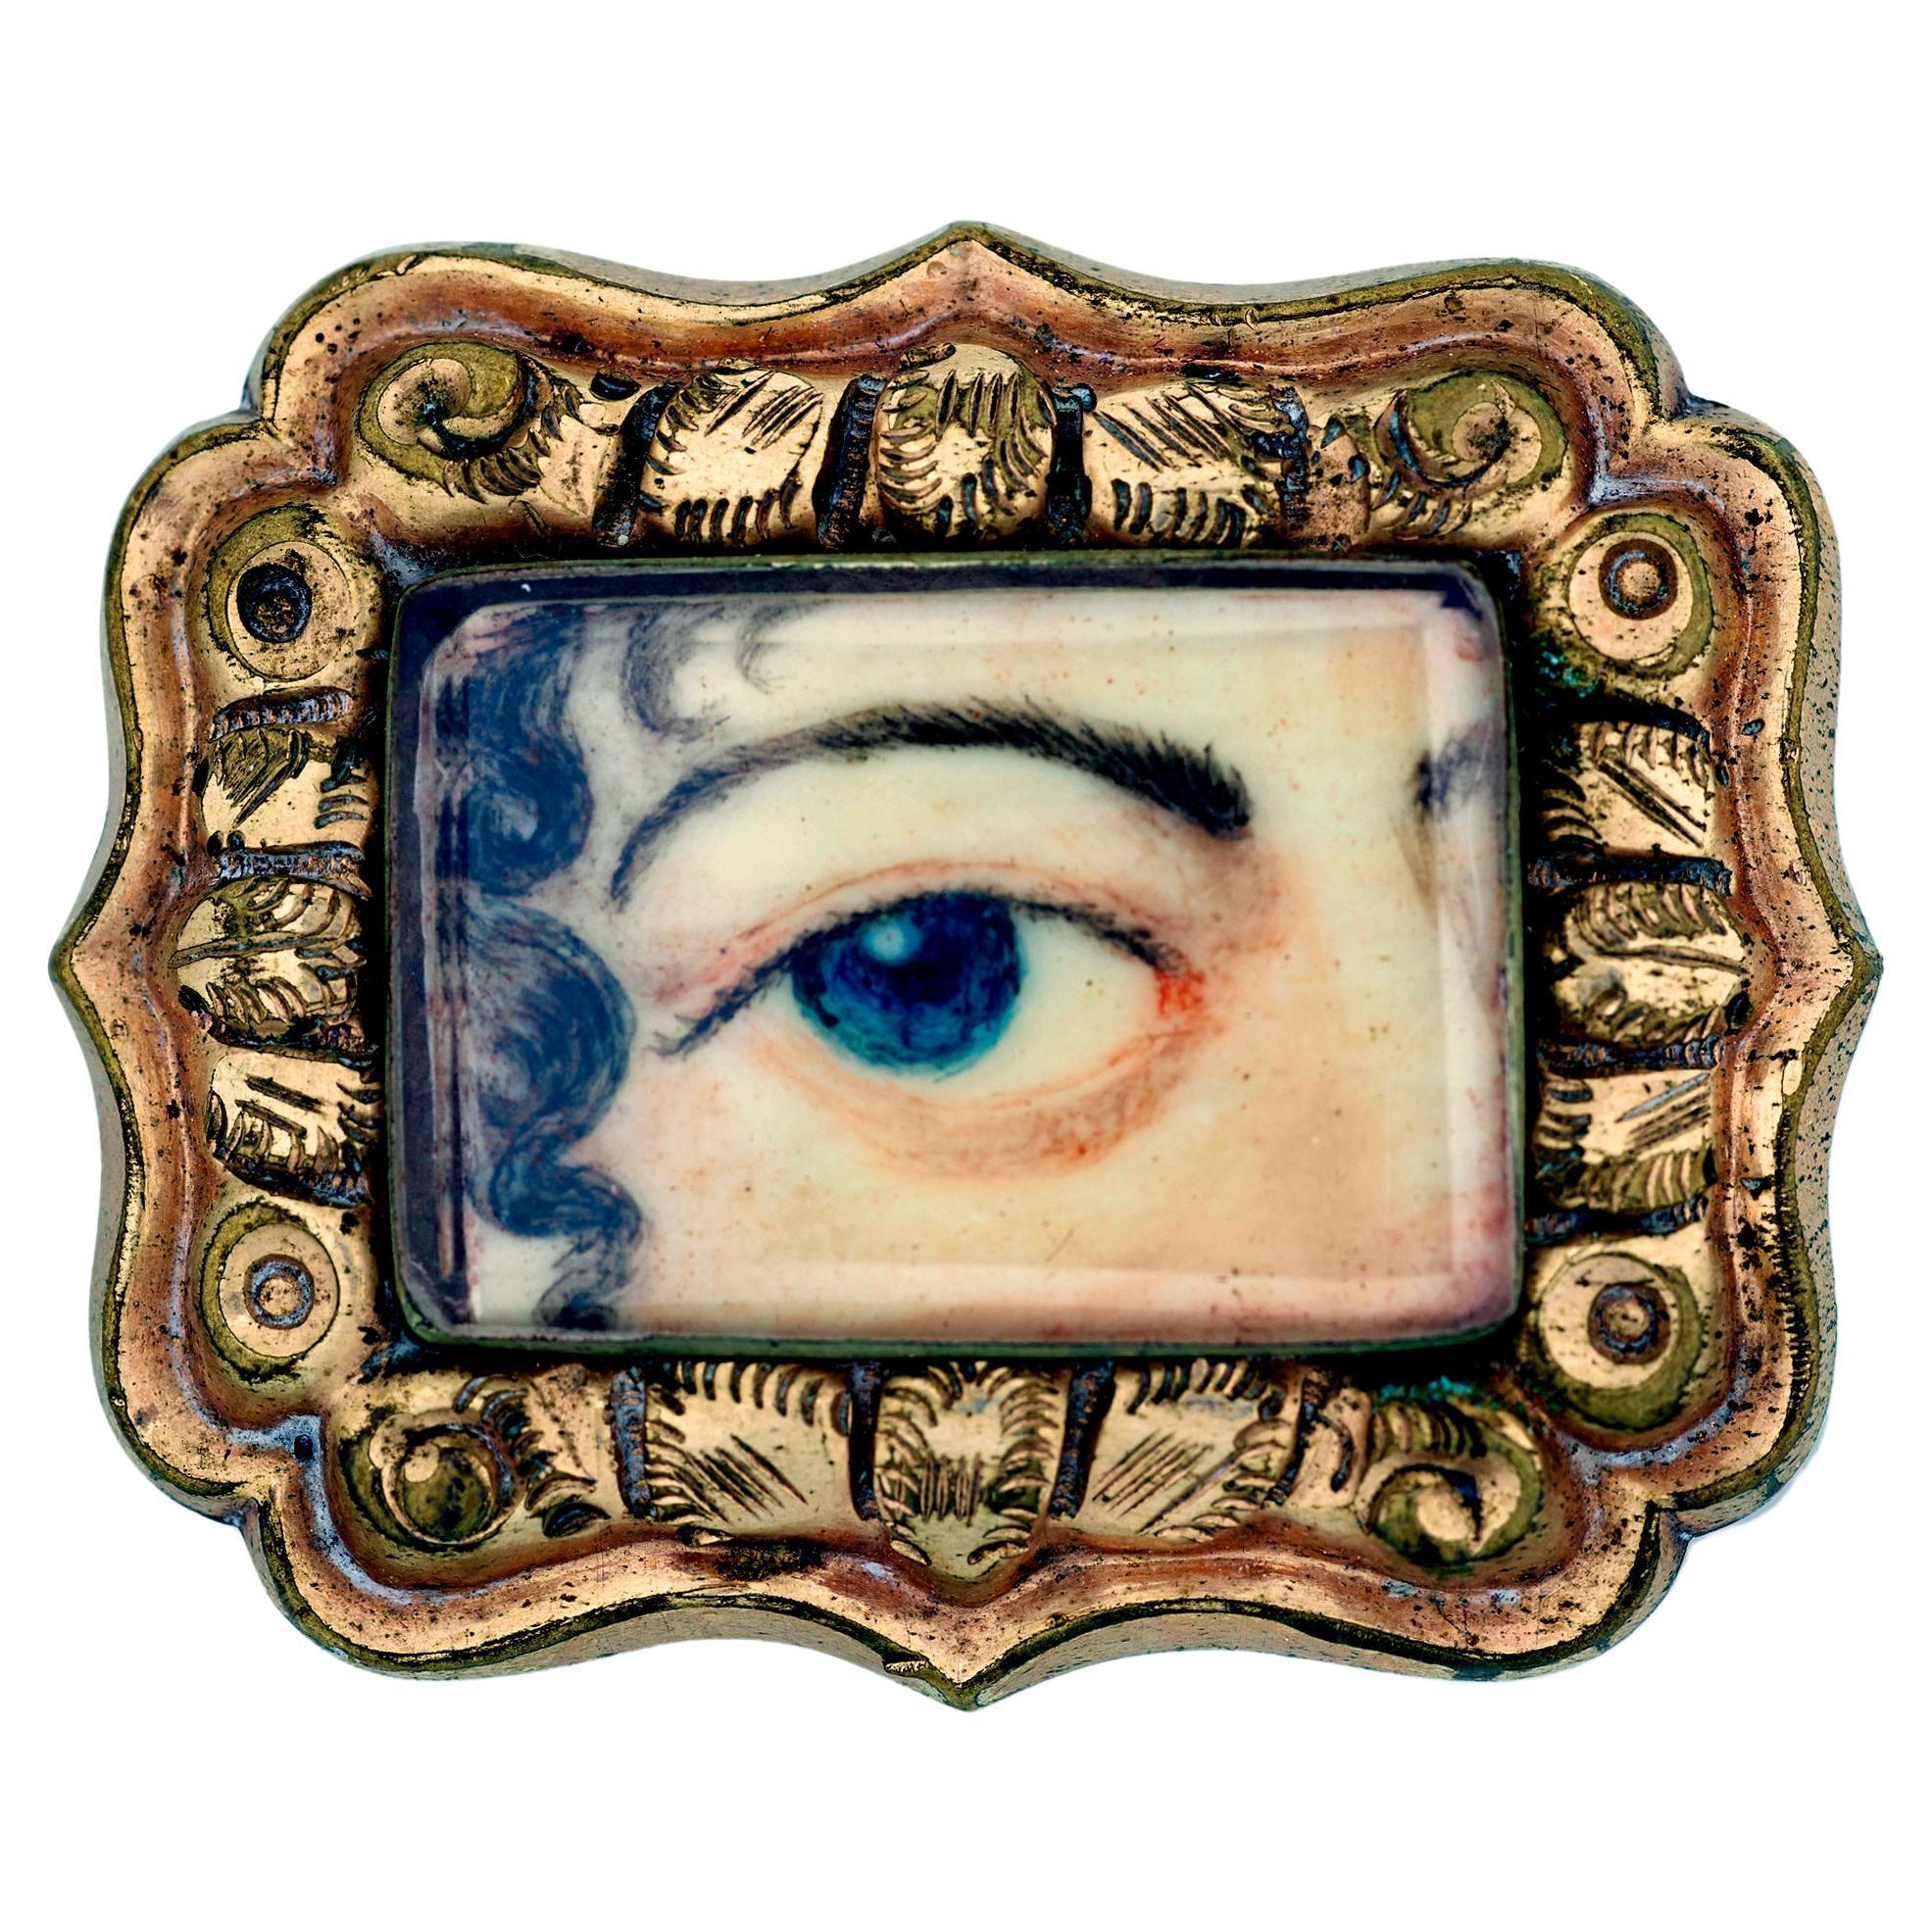 Antique Woman's Lover's Eye Portrait Miniature Brooch